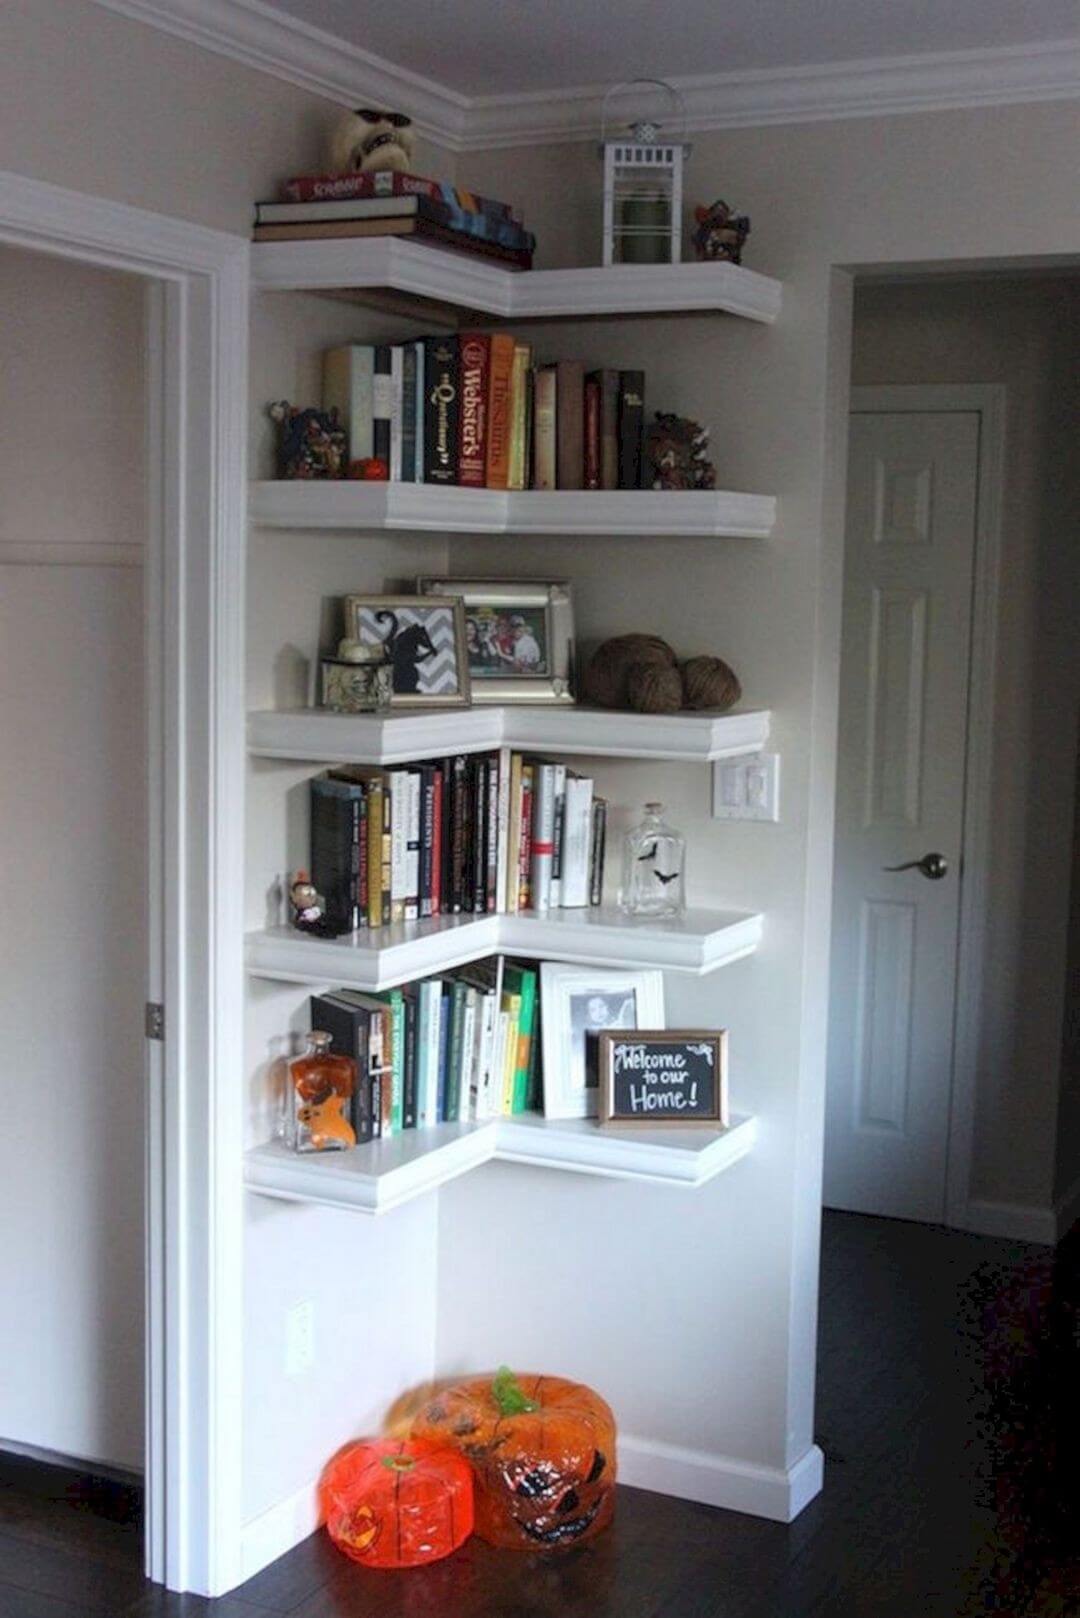 10- Corner shelves